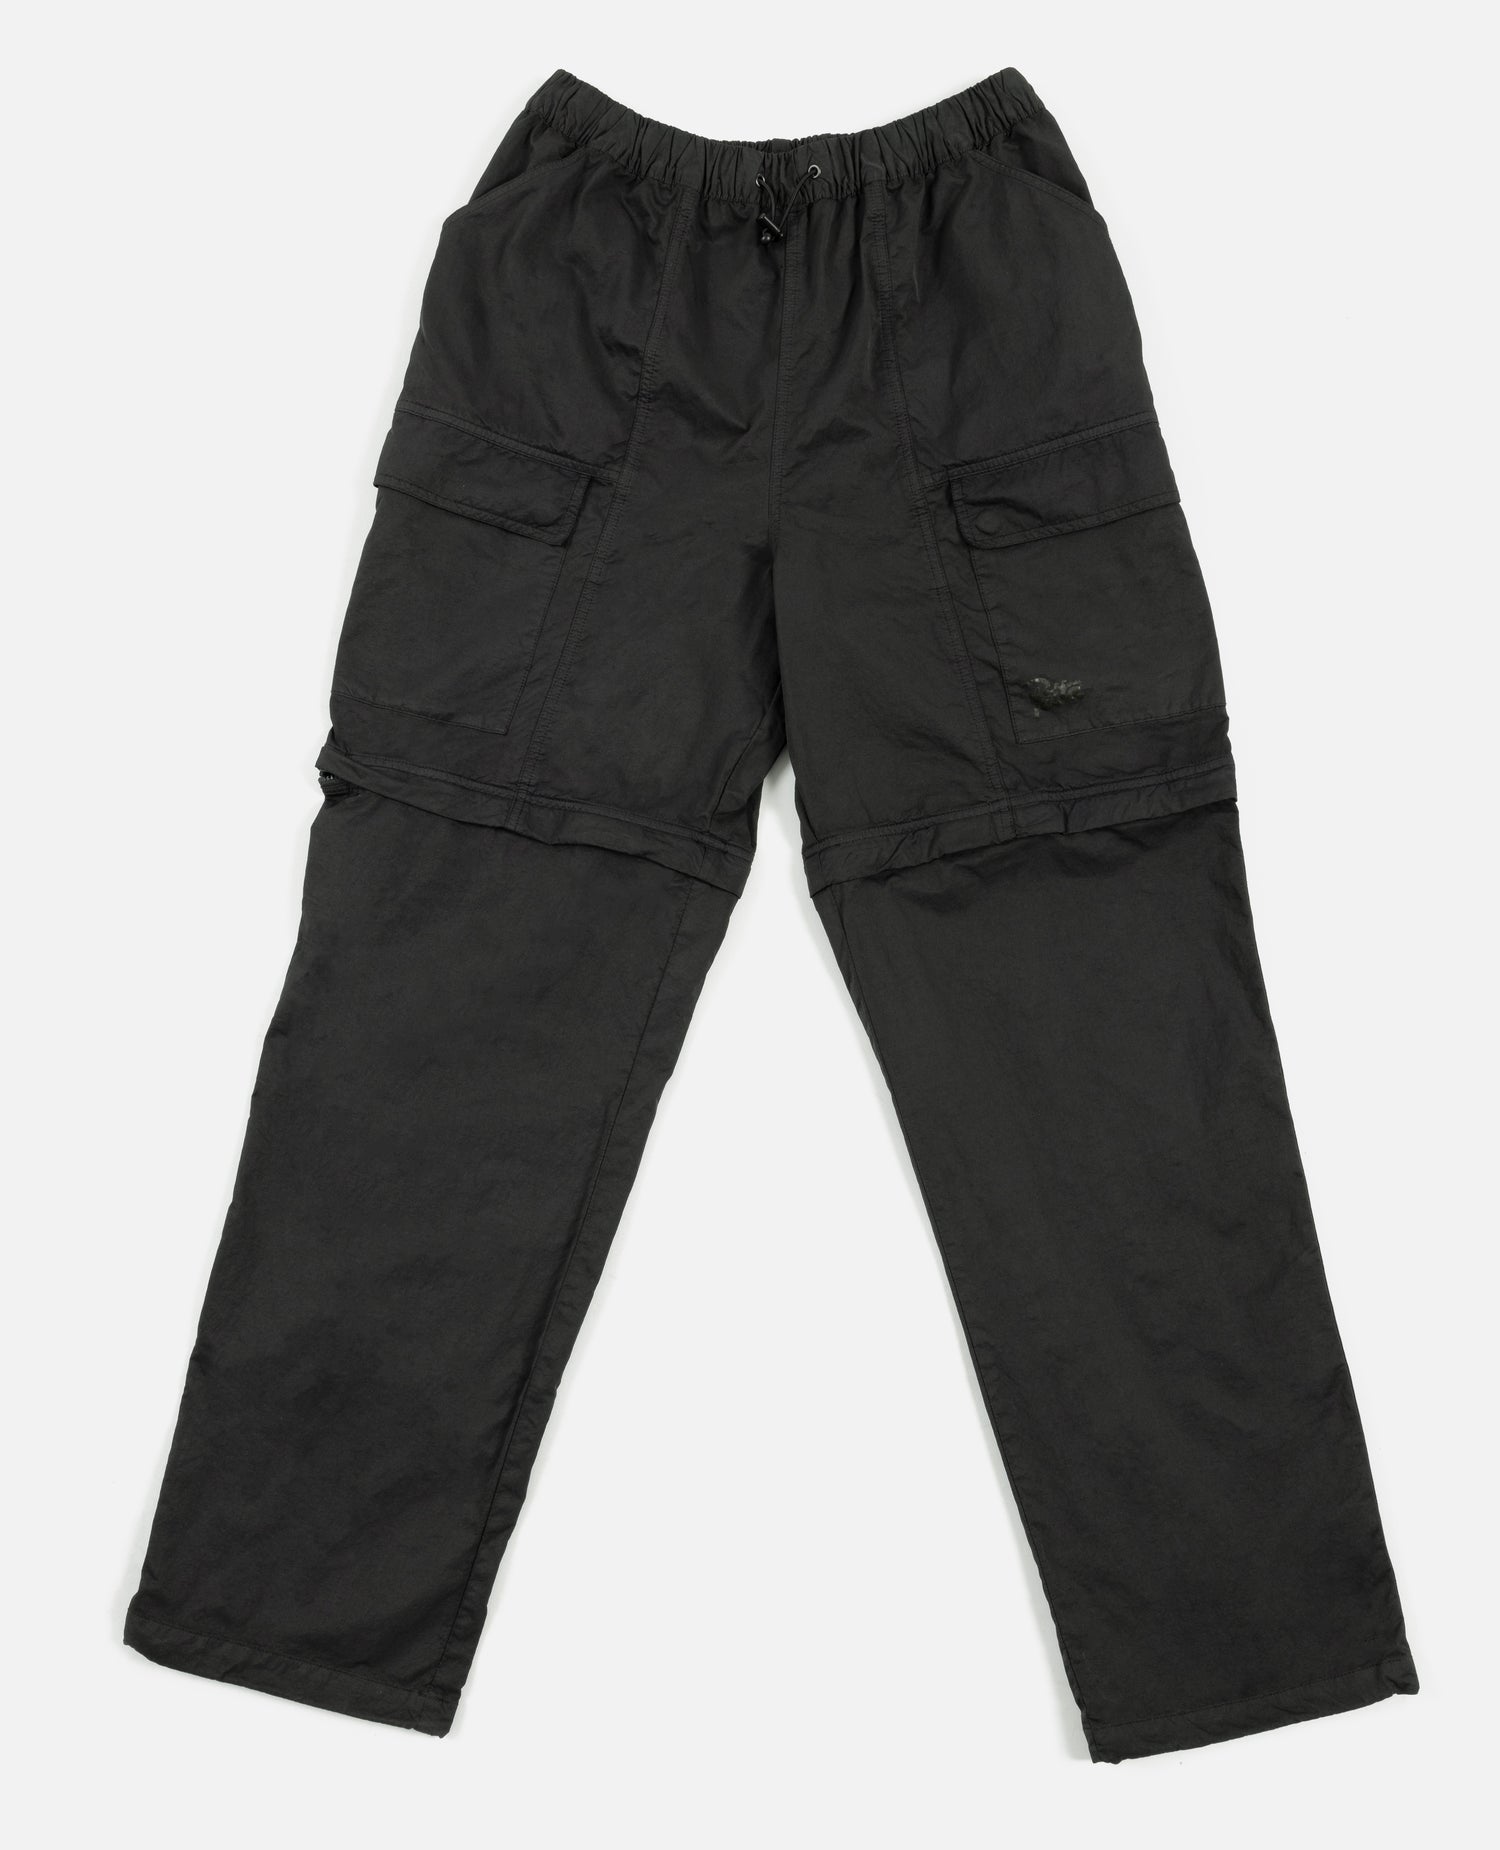 Pantalon tactique en nylon pigmenté Patta GMT (noir pirate)